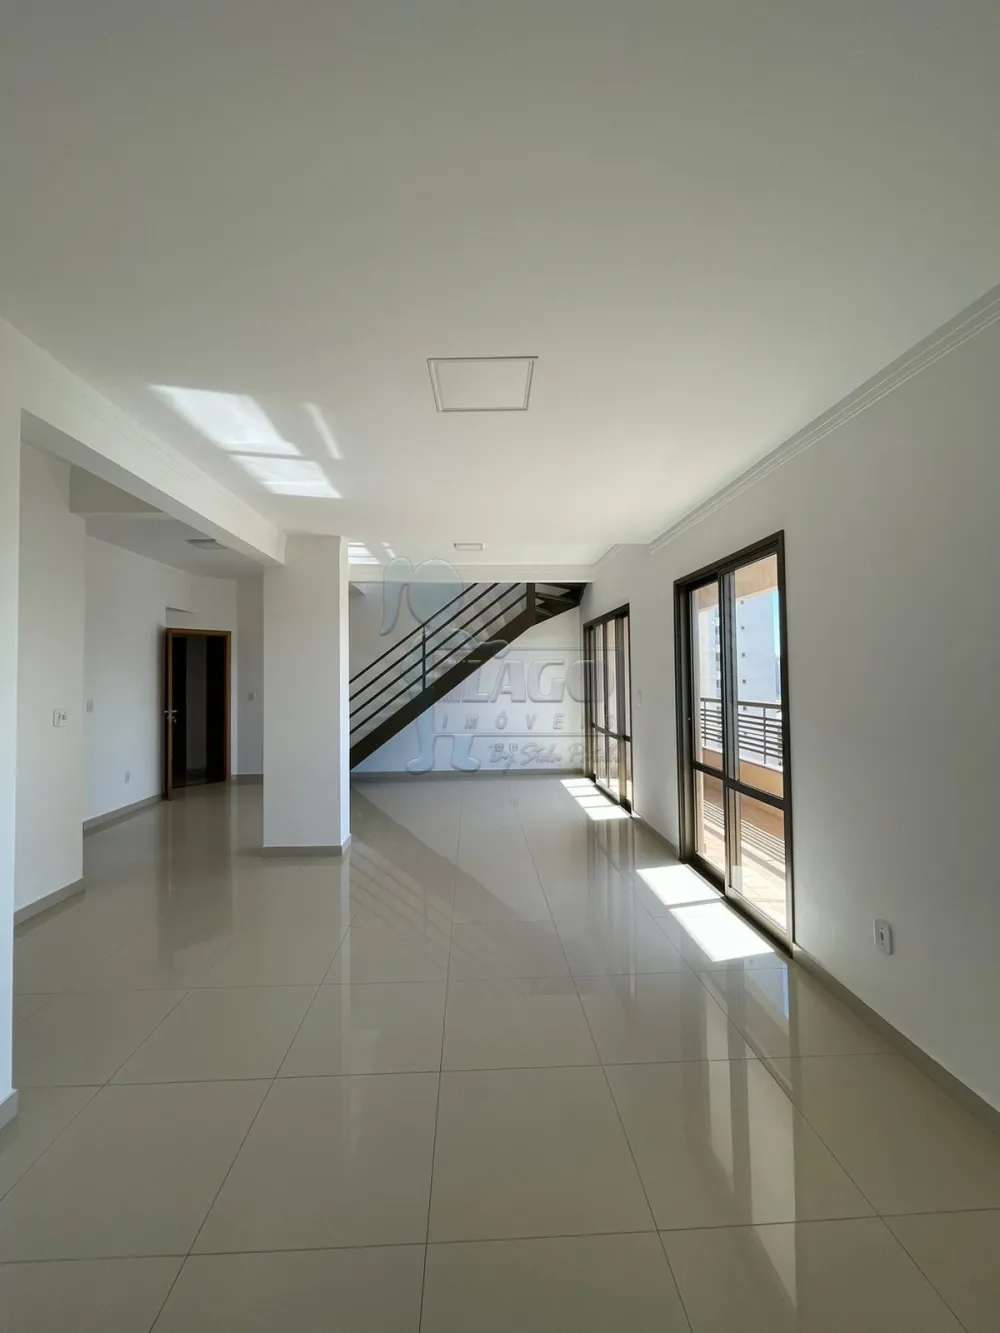 Comprar Apartamentos / Cobertura em Ribeirão Preto R$ 850.000,00 - Foto 2